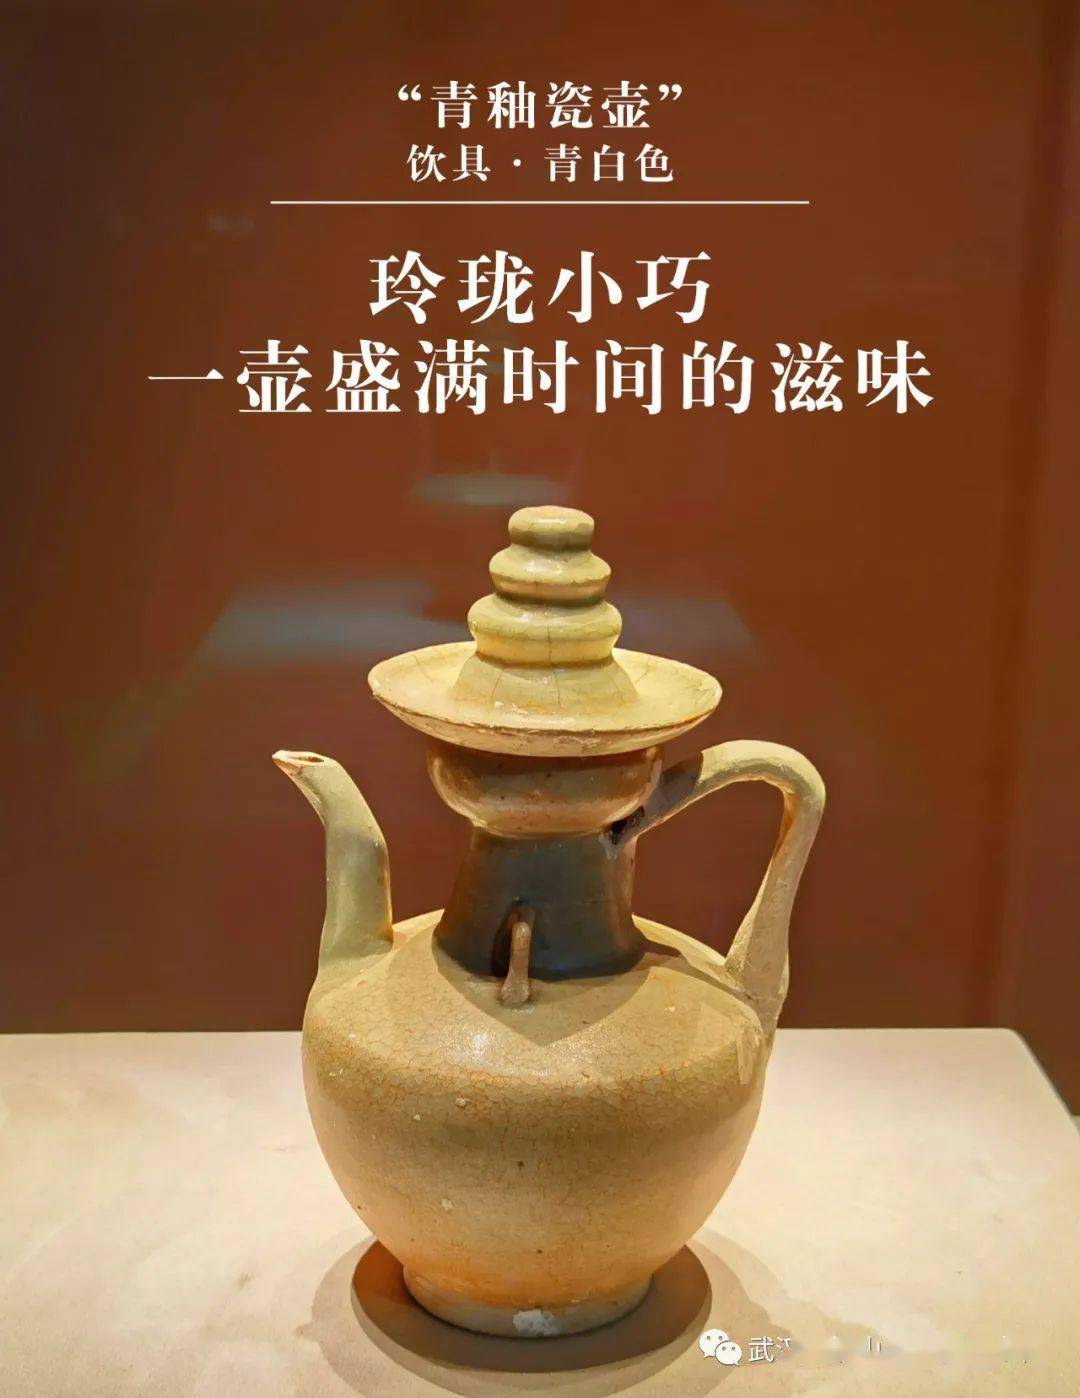 湖泗窑的产品装饰,主要以划,刻为主要技法,窑工们在碗,盏,杯,碟的内壁